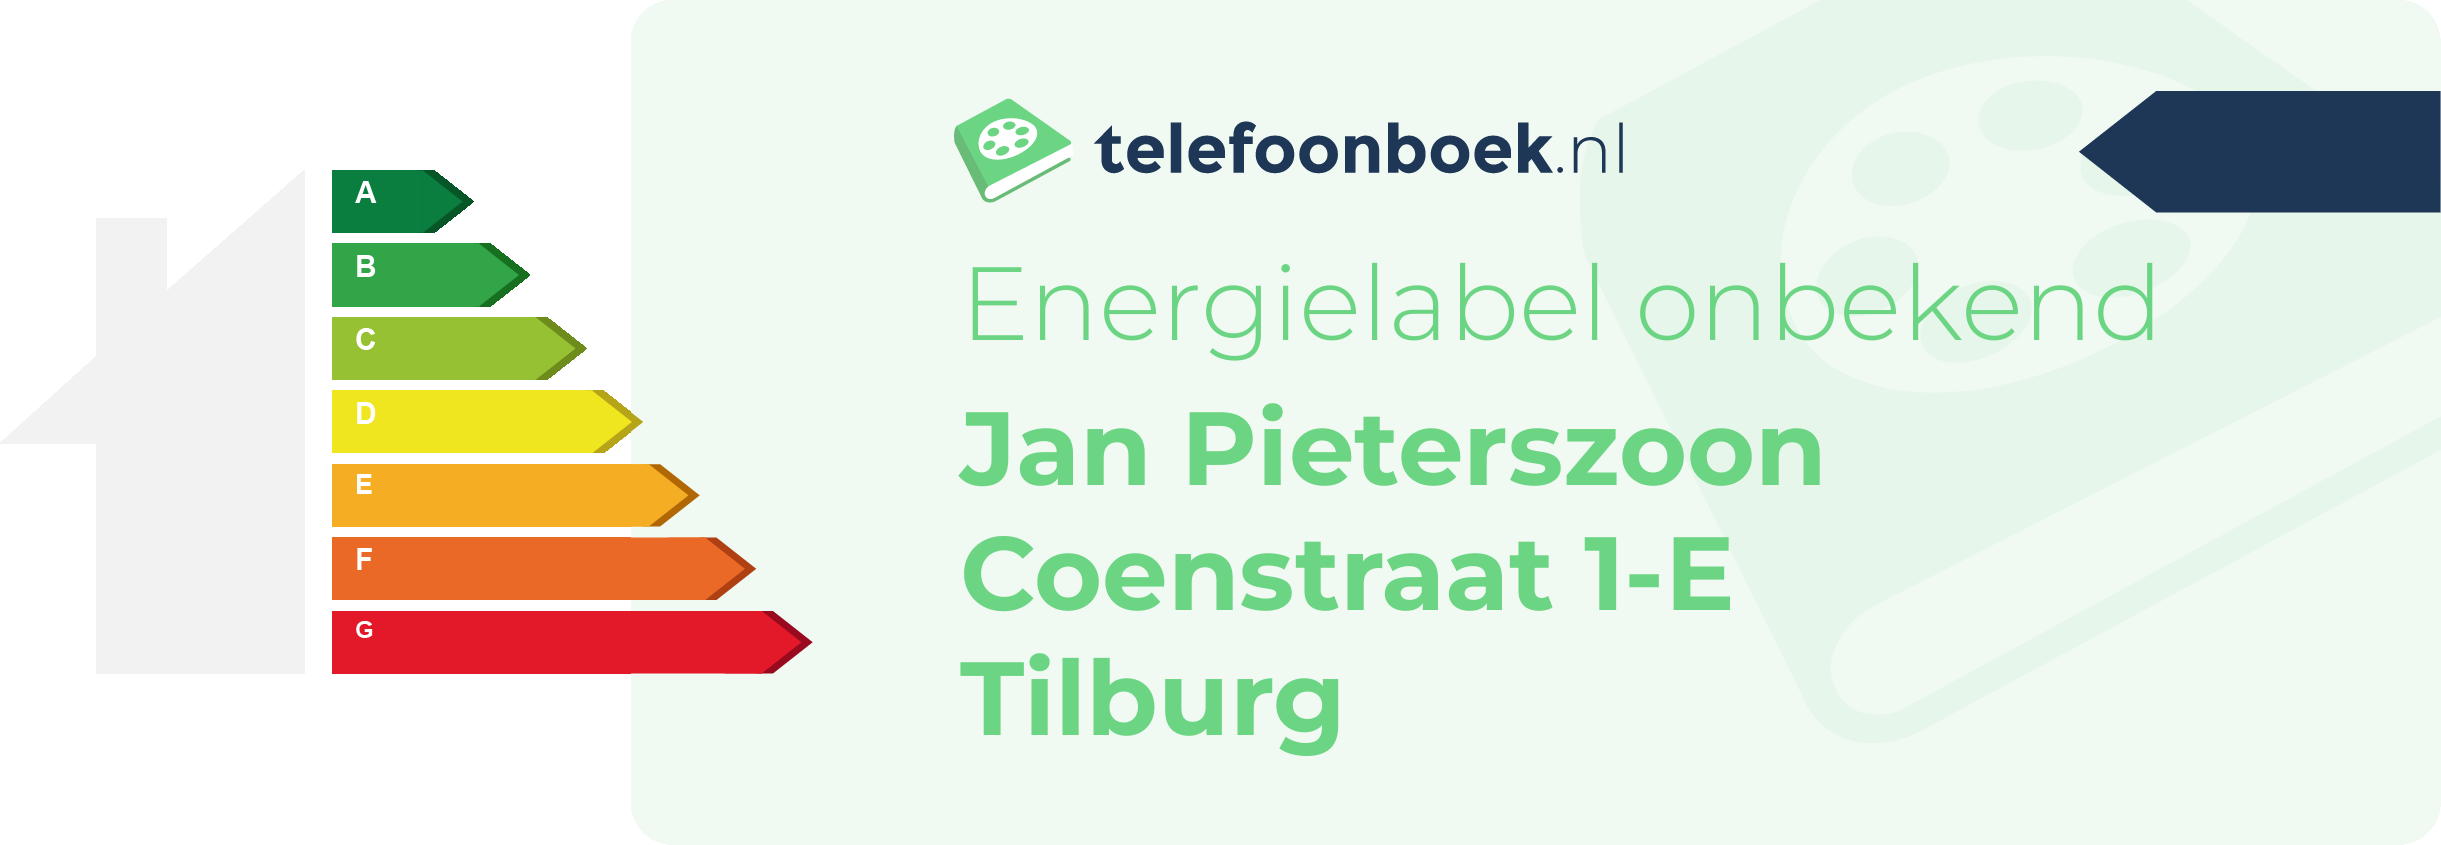 Energielabel Jan Pieterszoon Coenstraat 1-E Tilburg